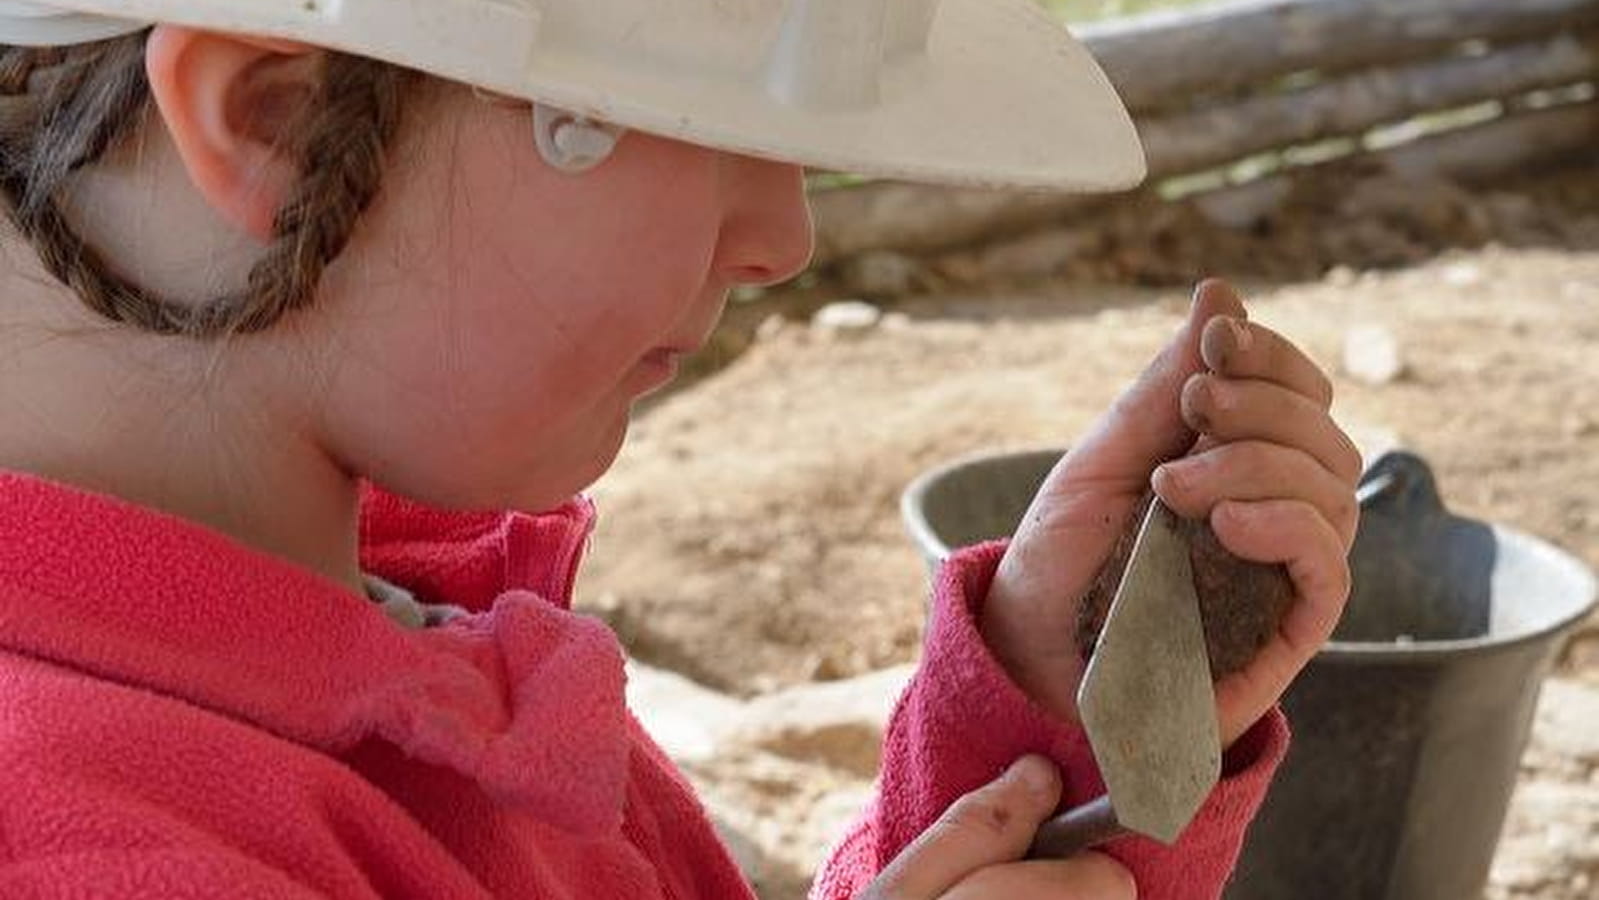 Archäologie-Workshop in Bibracte für Kinder